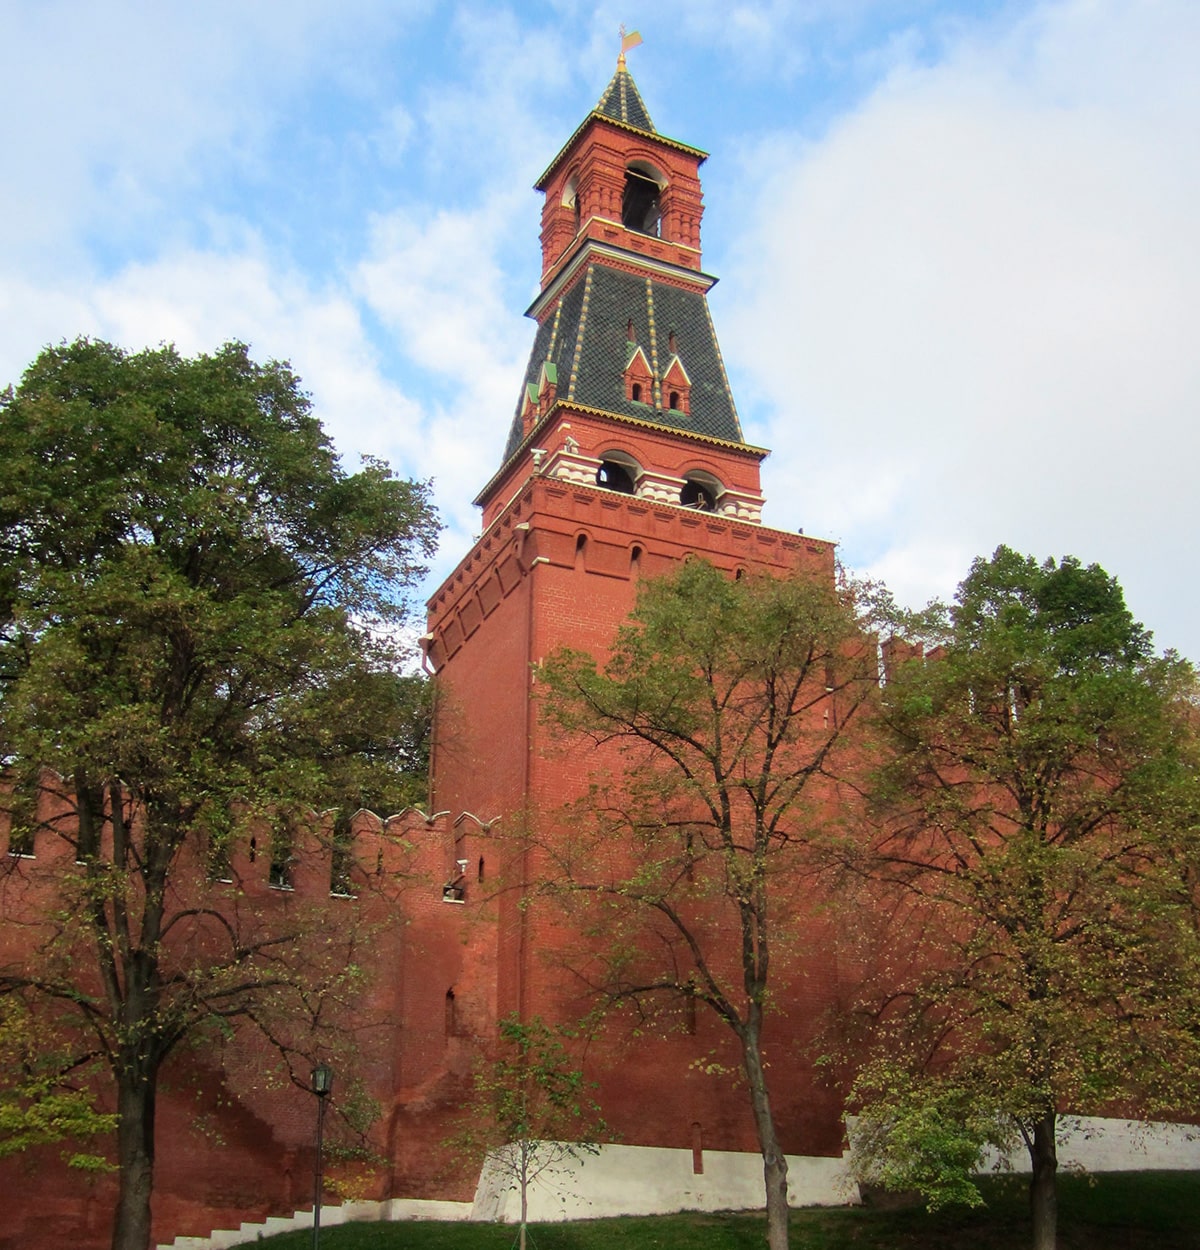 Набатная башня. 38 м. 1495 год. На башне располагались колокола Спасского набата — противопожарной службы Кремля.